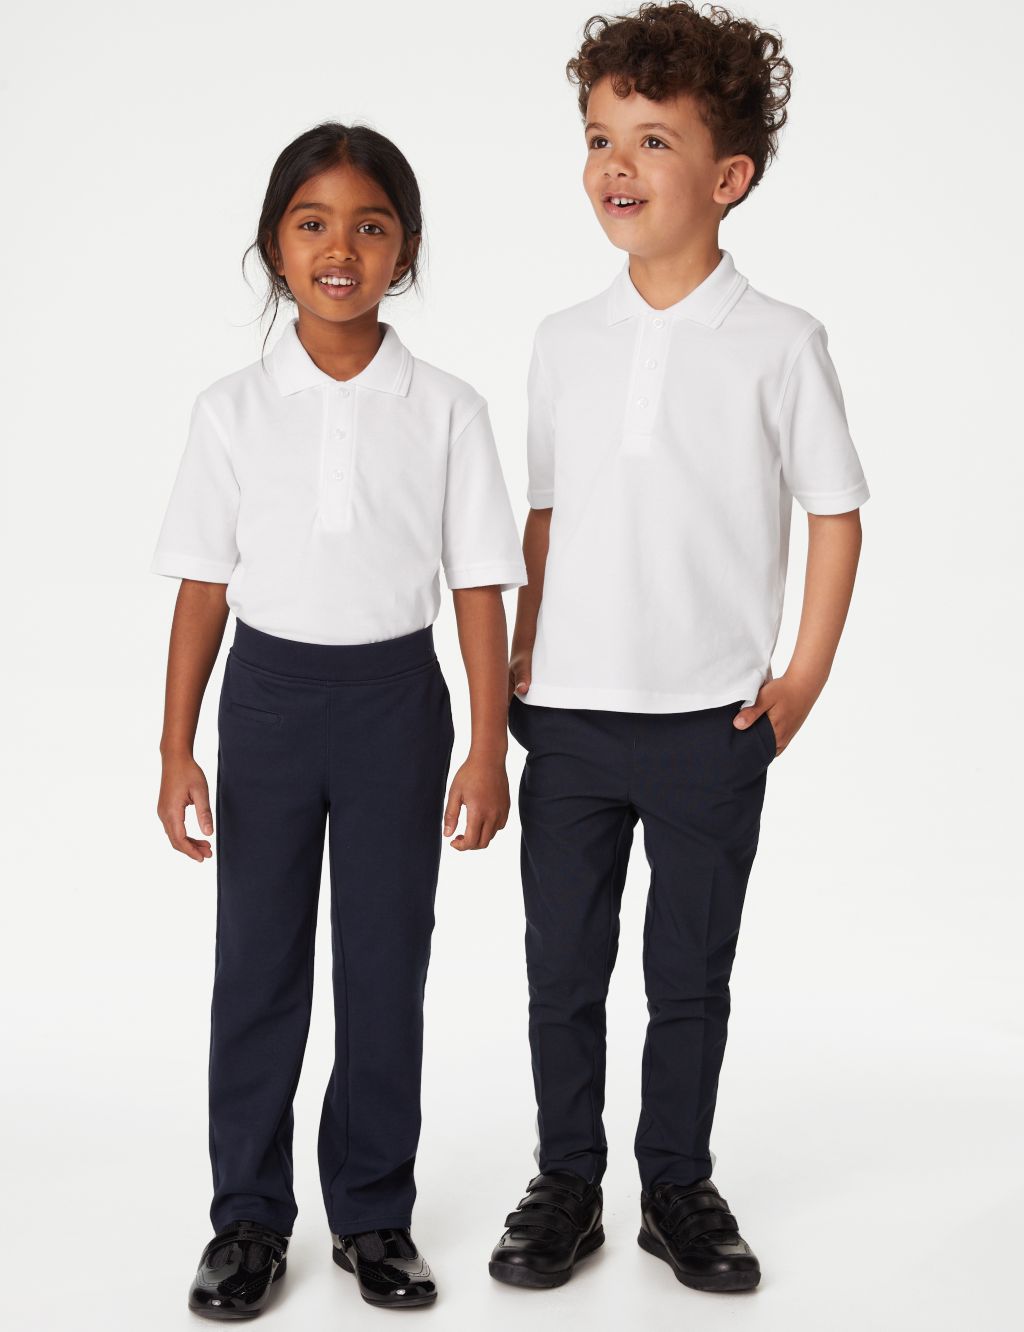 2pk Unisex Easy Dressing School Polo Shirts (3-18 Yrs) image 2